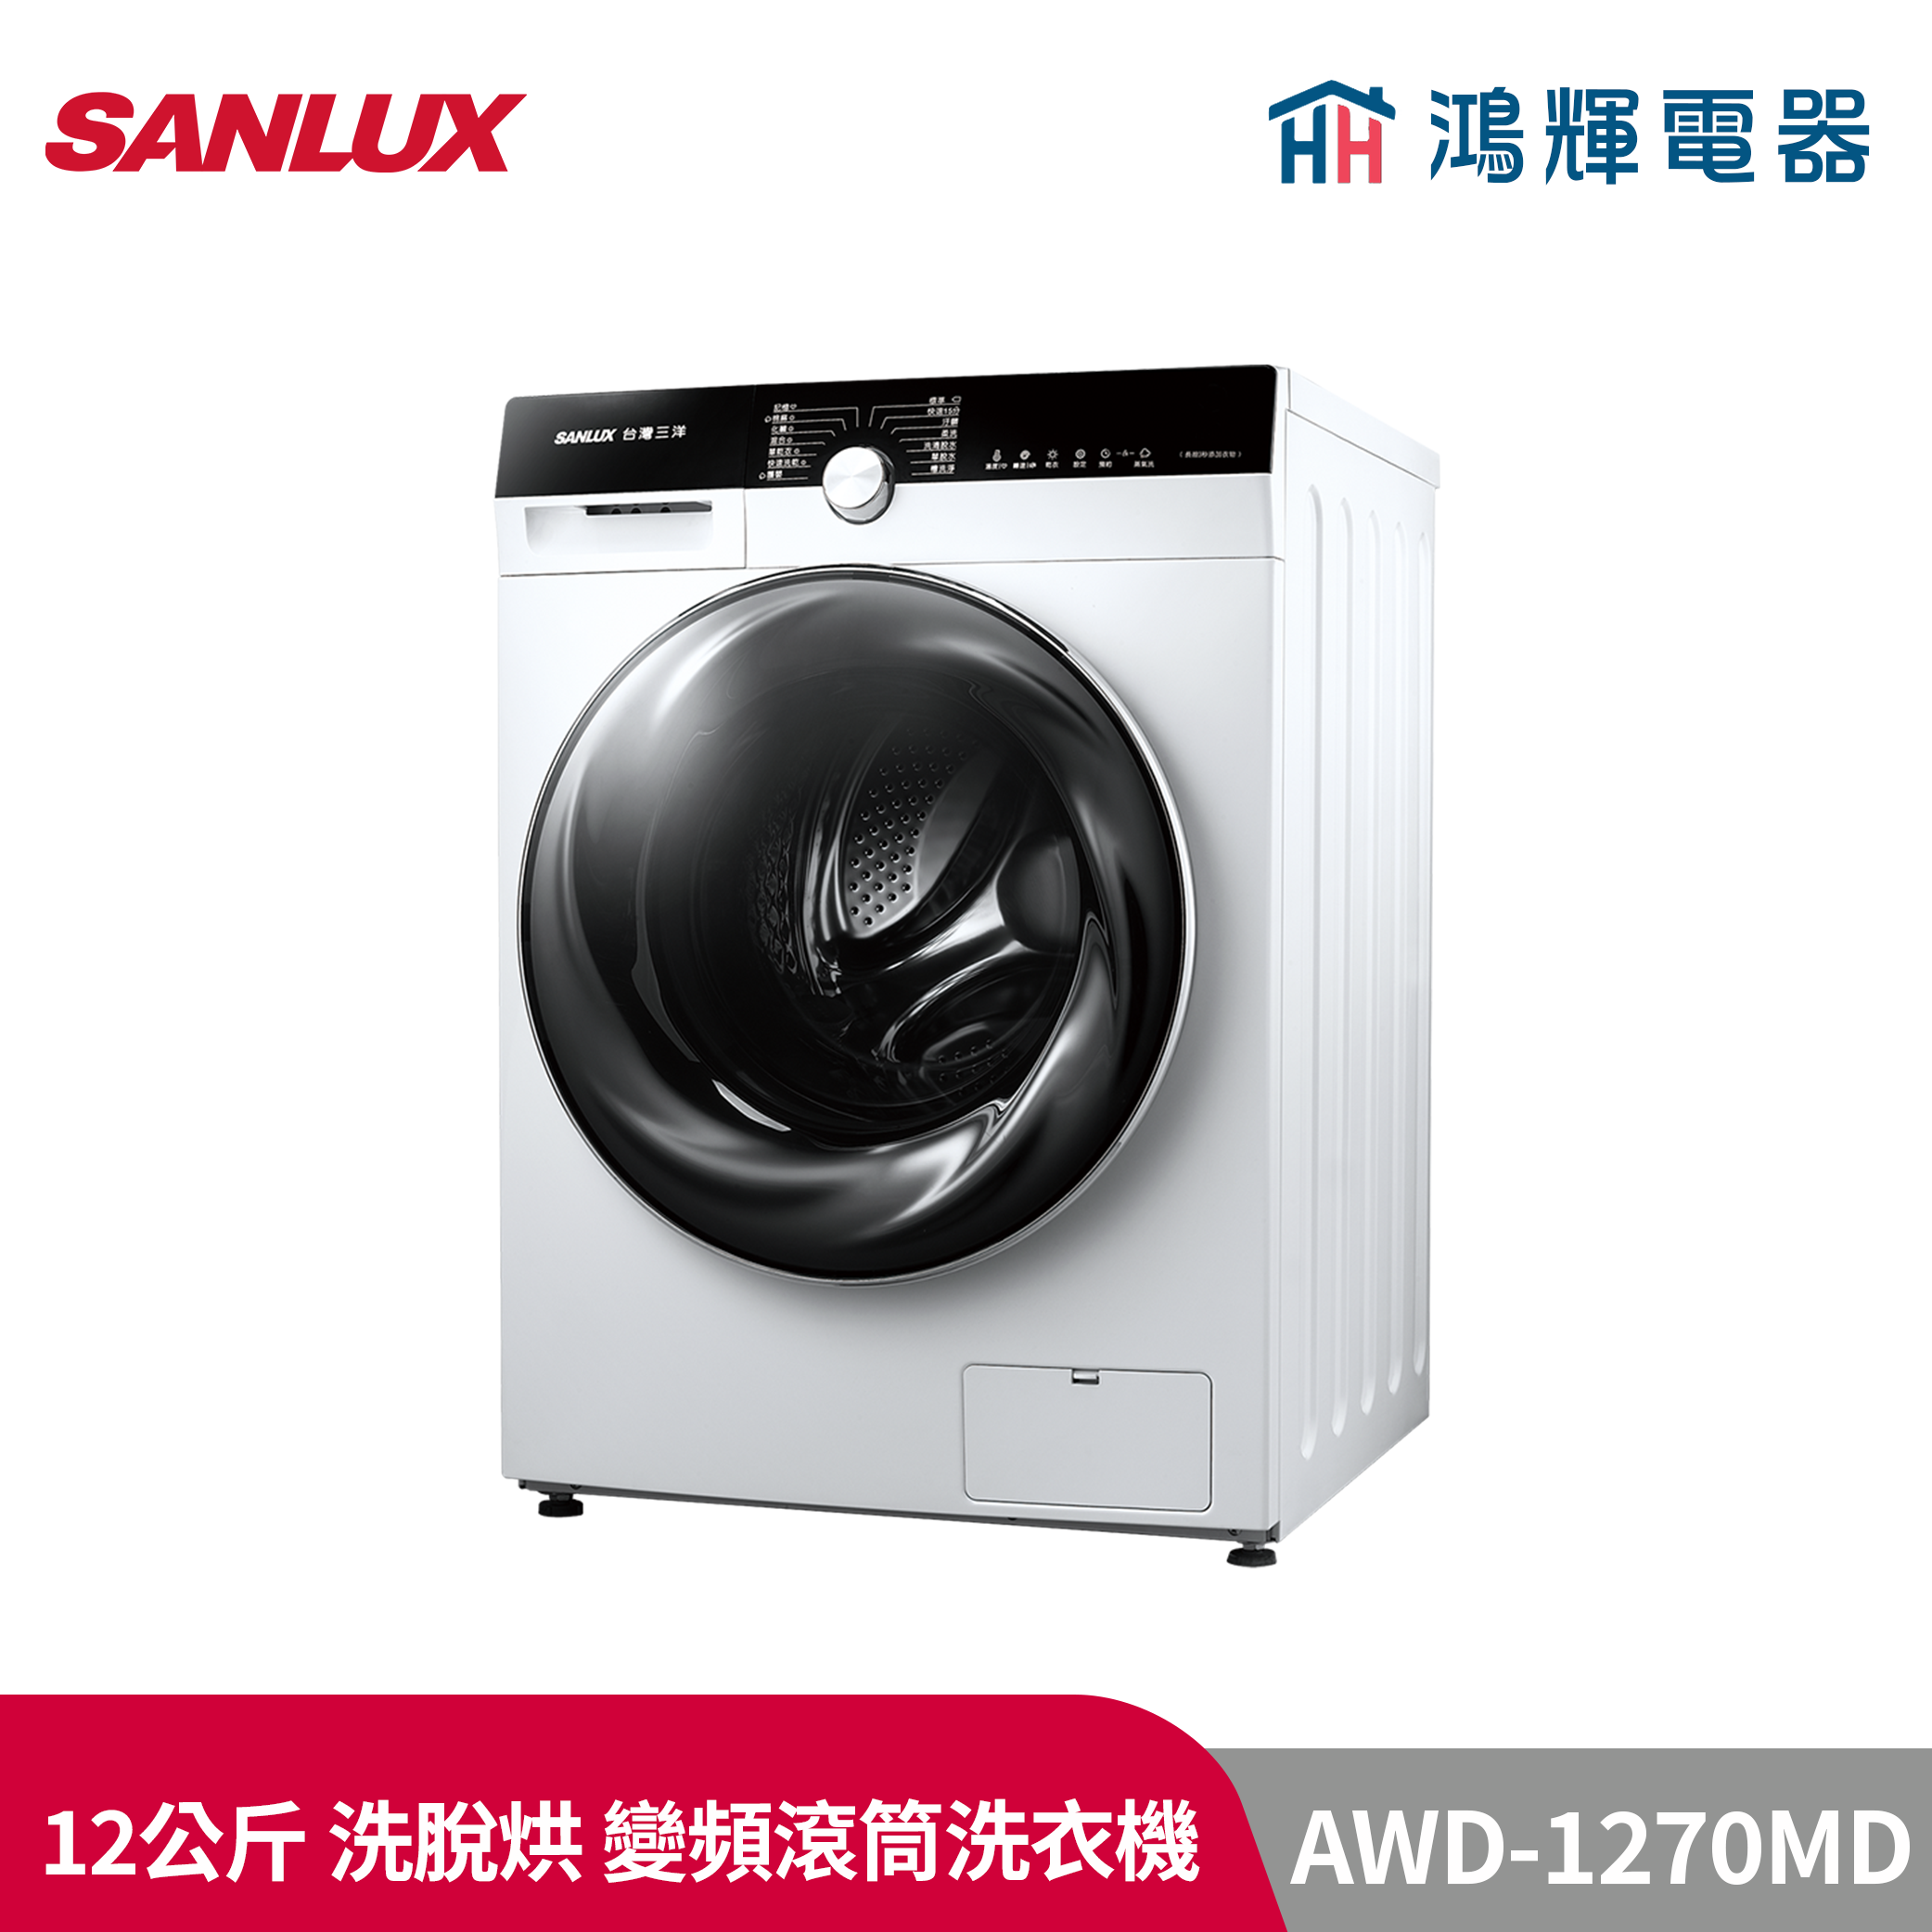 鴻輝電器 | SANLUX台灣三洋 AWD-1270MD 12公斤 洗脫烘 變頻滾筒洗衣機 AWD-1270MD